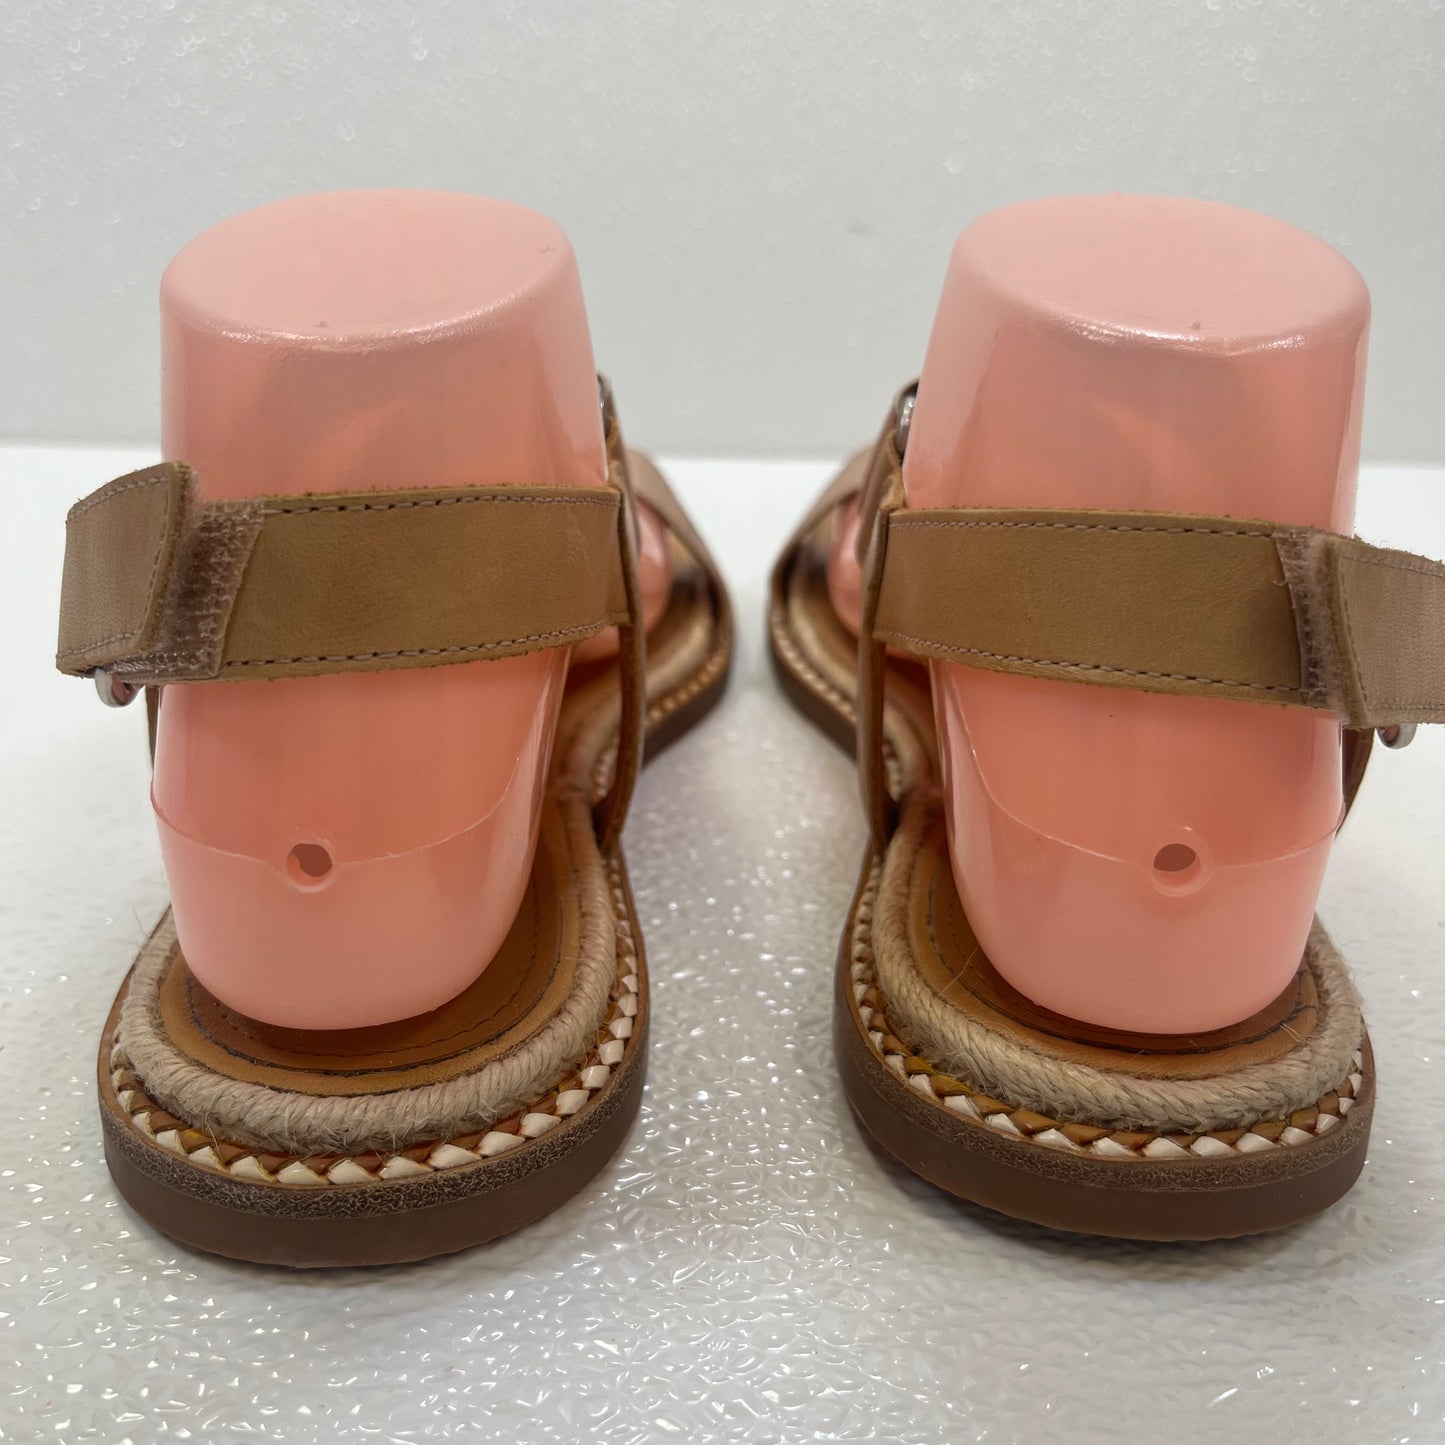 Sandals Flats By Caslon  Size: 8.5